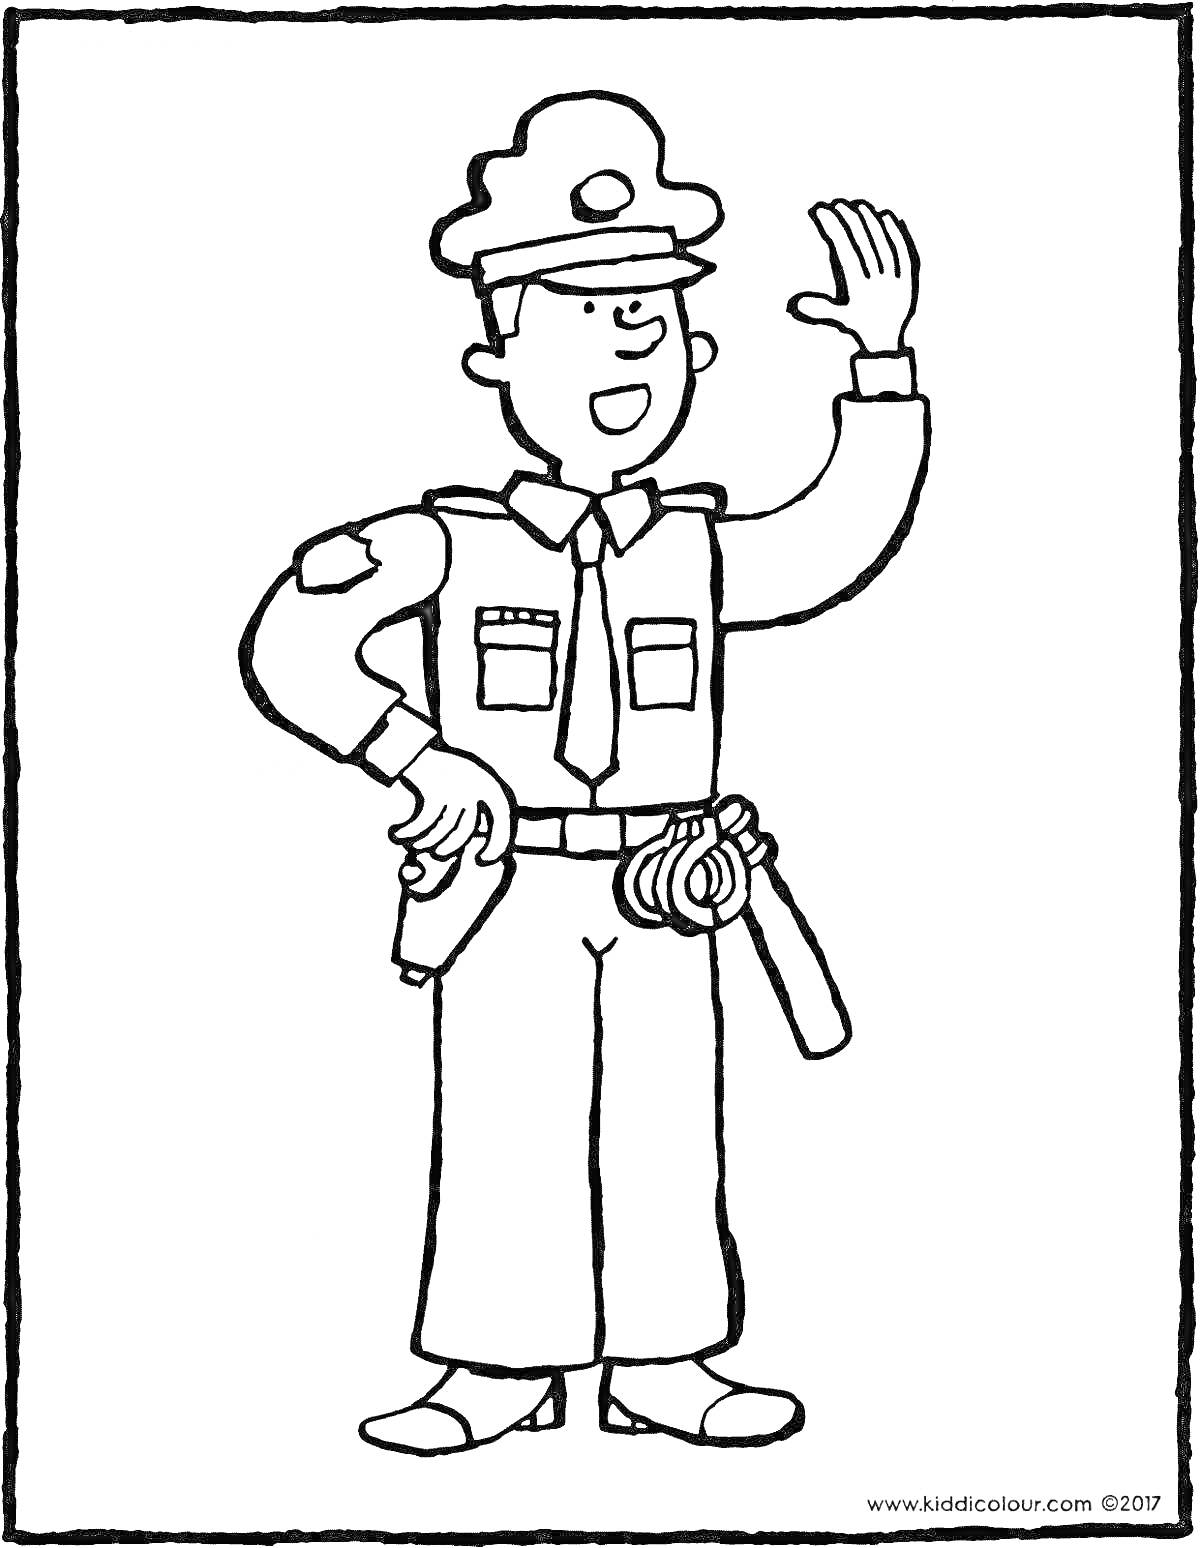 Раскраска Полицейский в форме с поднятой рукой, ремнем и снаряжением